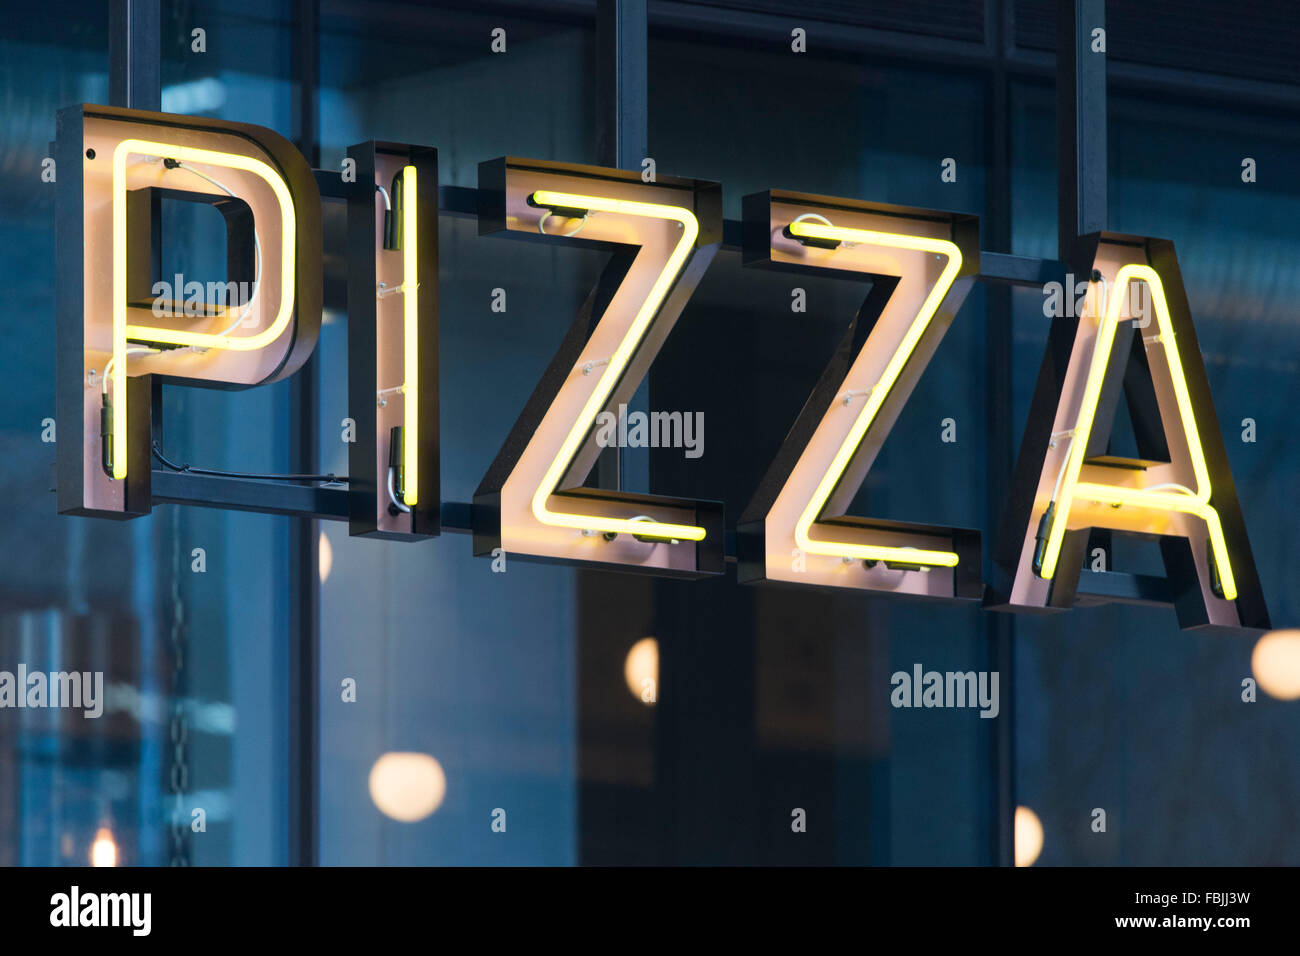 Pizza logo segno nelle luci fluorescenti. Foto Stock